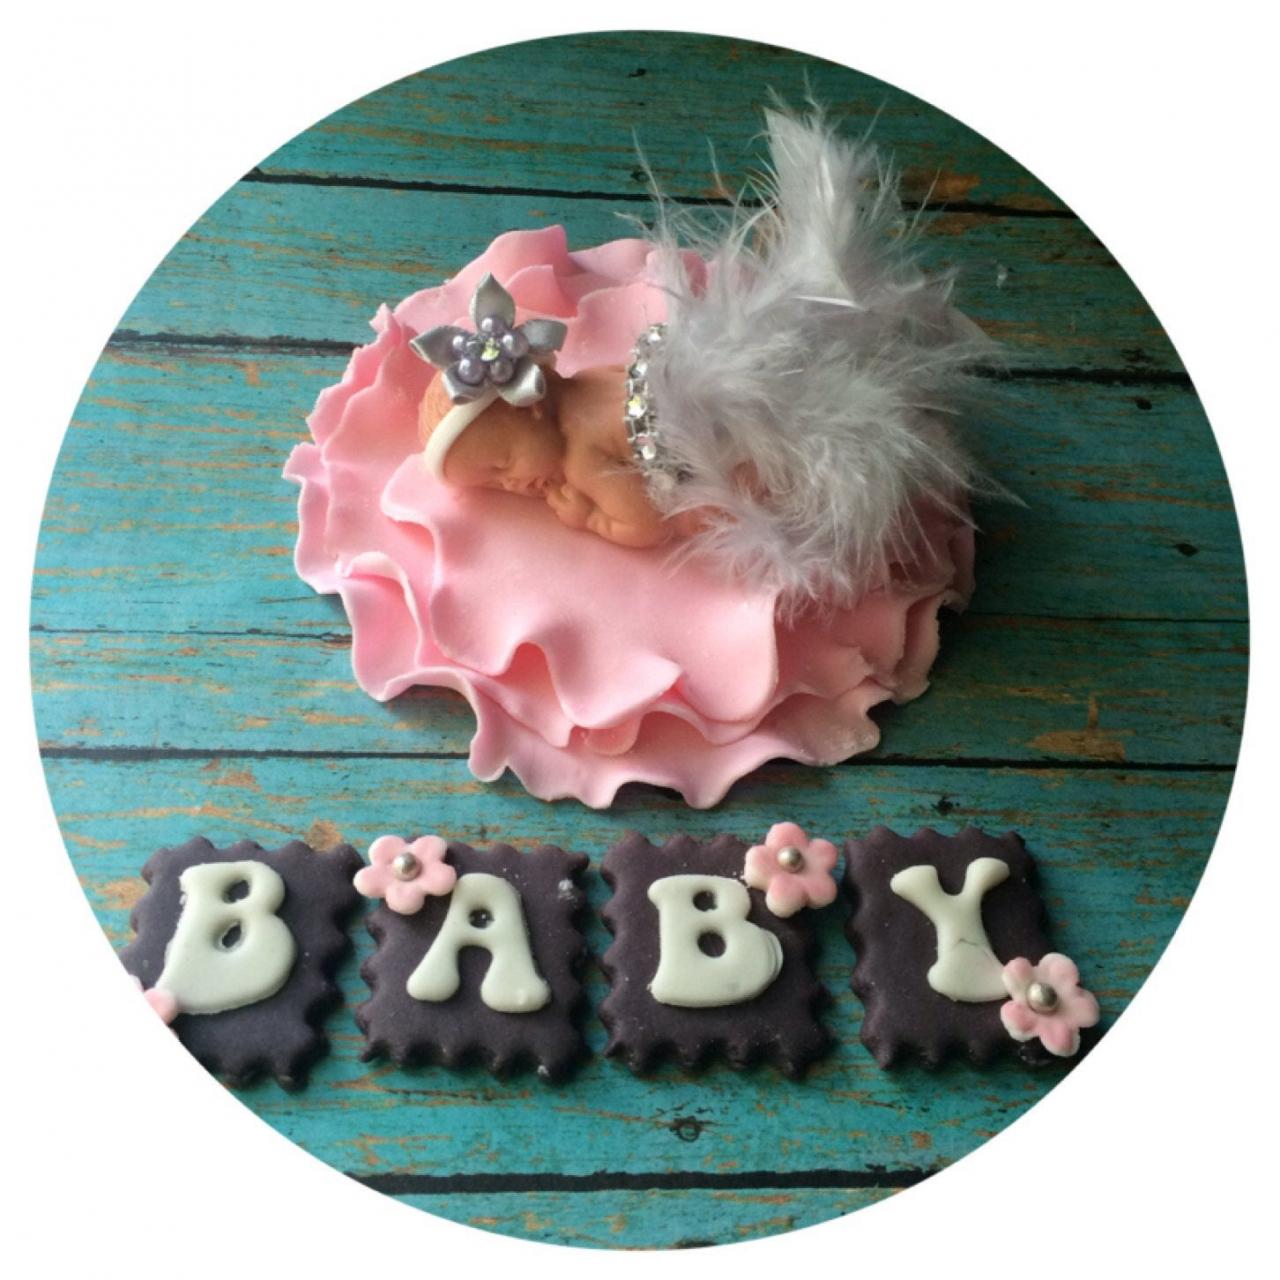 BABY SHOWER FONDANT Cake topper / Cake Topper Baby Shower / Girl baby shower cake topper / personalized baby shower cake topper / baby